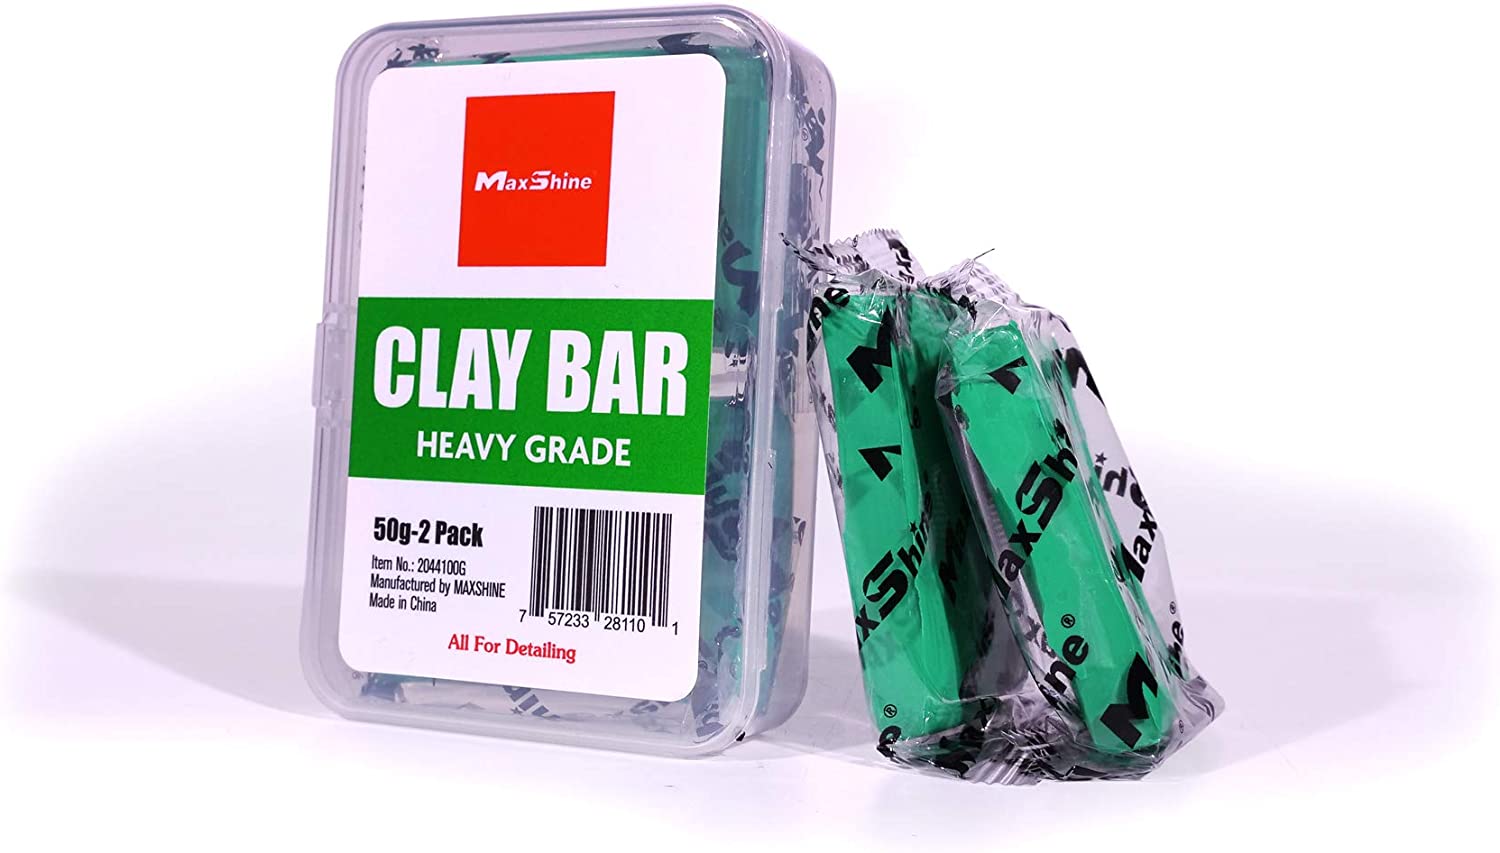 Clay Magic Detail Bar Medium Grade (Red) 200gr - Auto Detailing